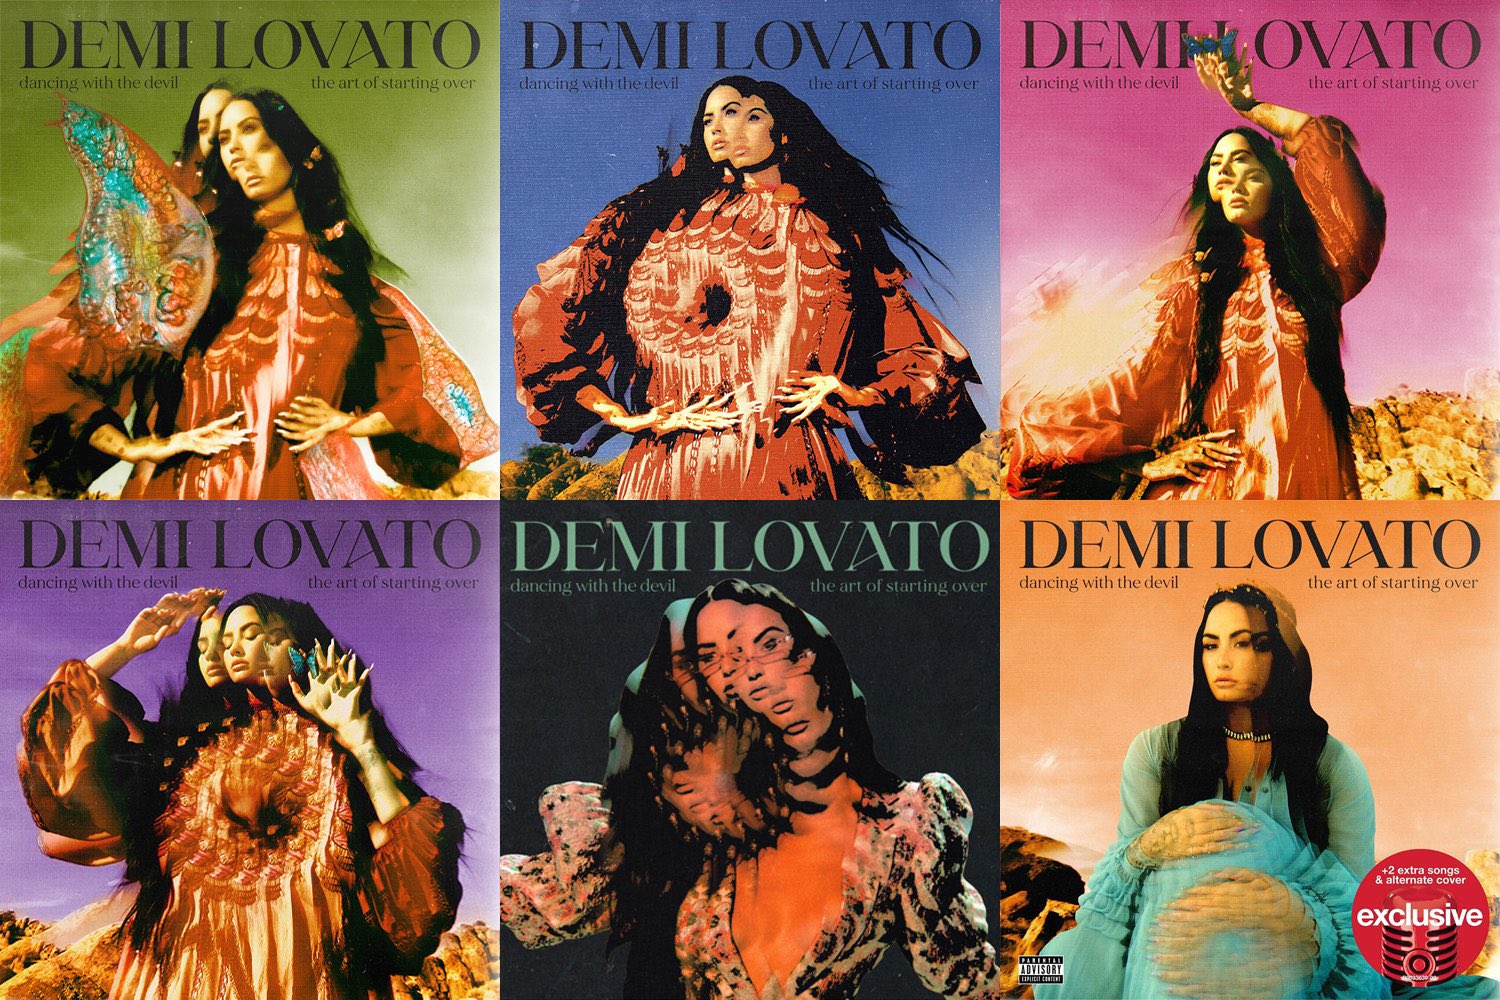 Demi Lovato Announces New Album Dancing With the Devil